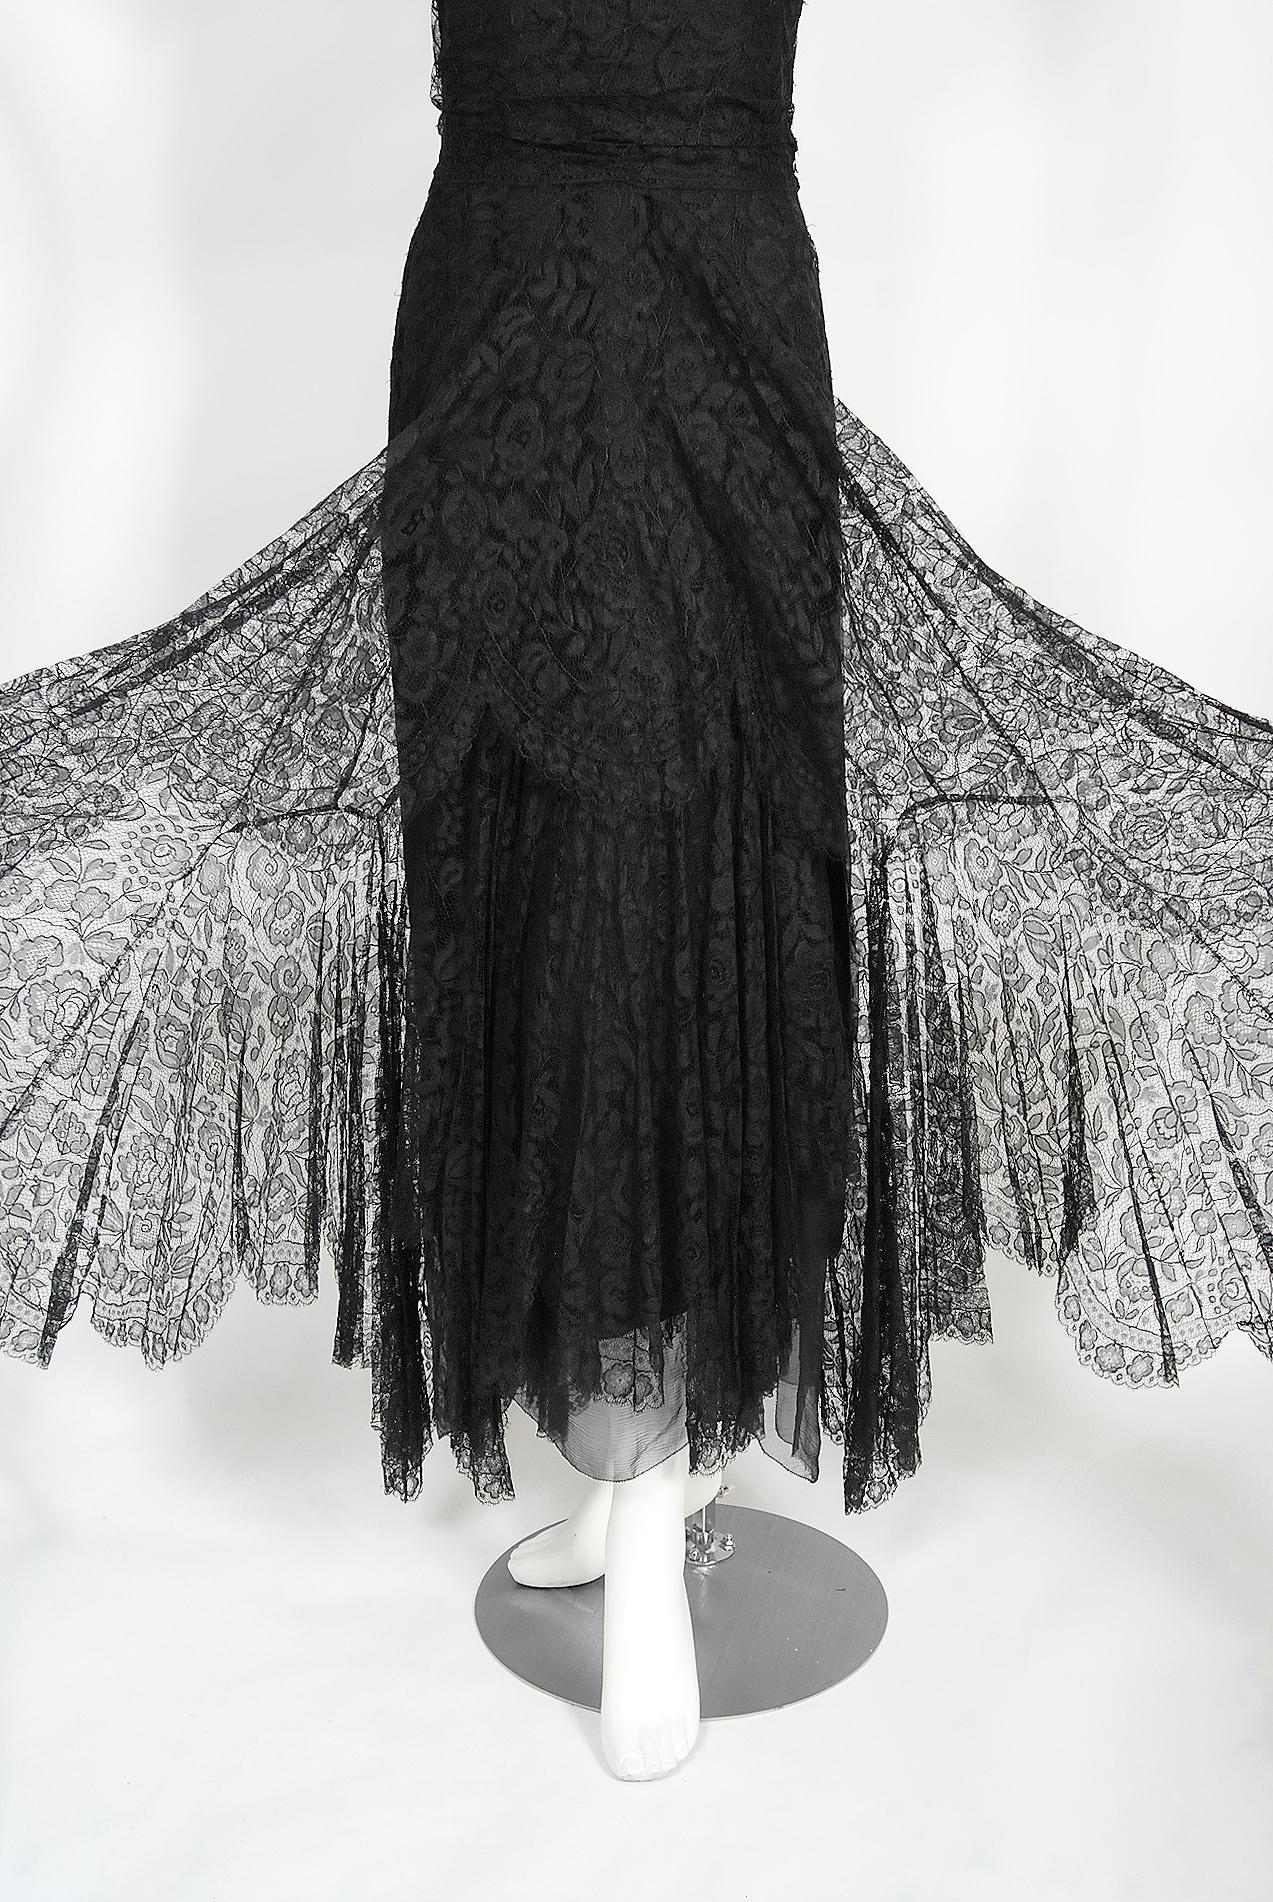 Vintage 1930's Bonwit Teller Couture Black Scalloped Lace Appliqué Bias-Cut Gown For Sale 2